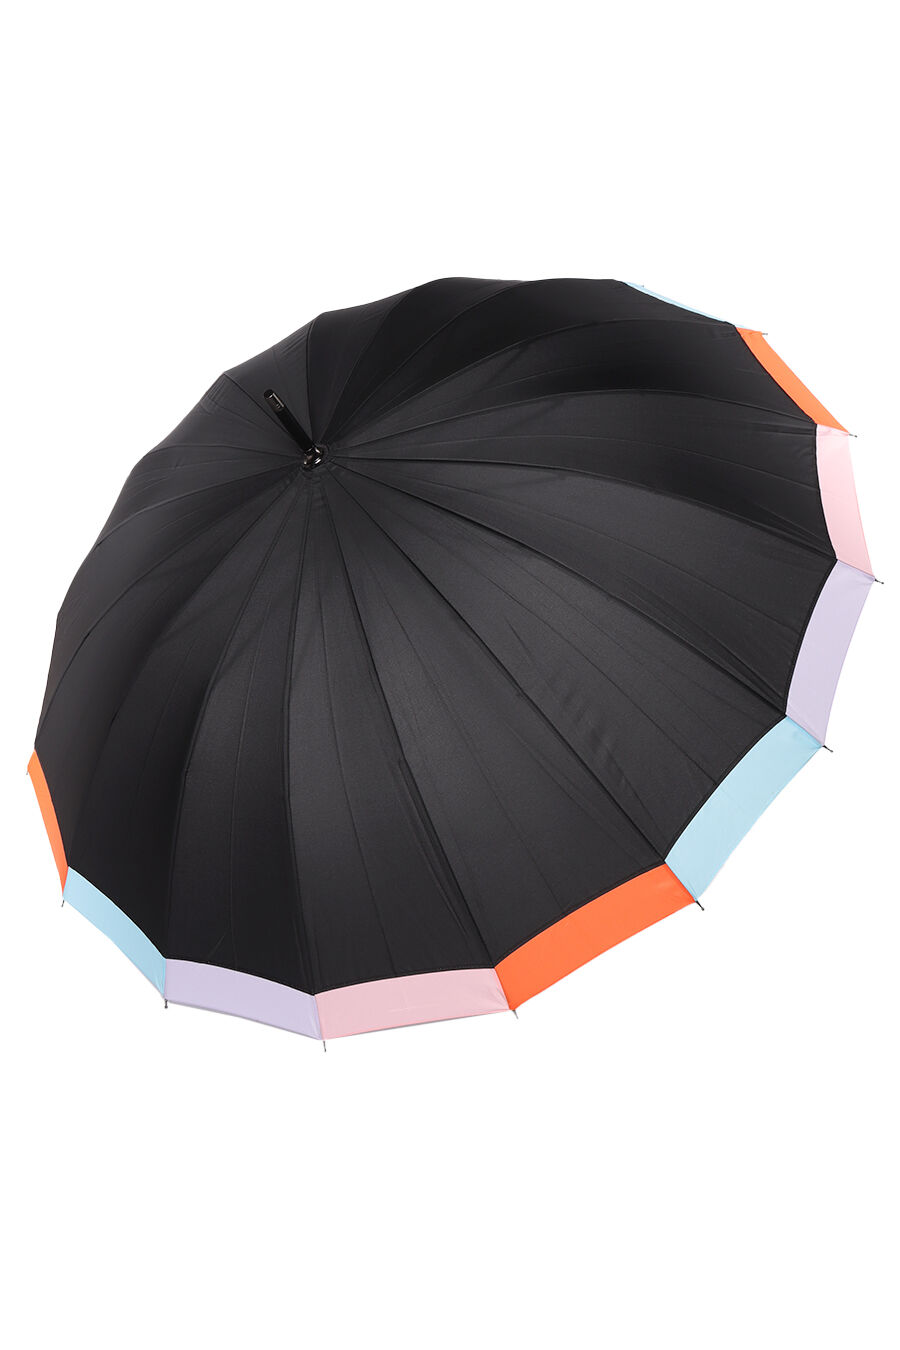 Зонт жен. Umbrella 2161-3 полуавтомат трость (черный)